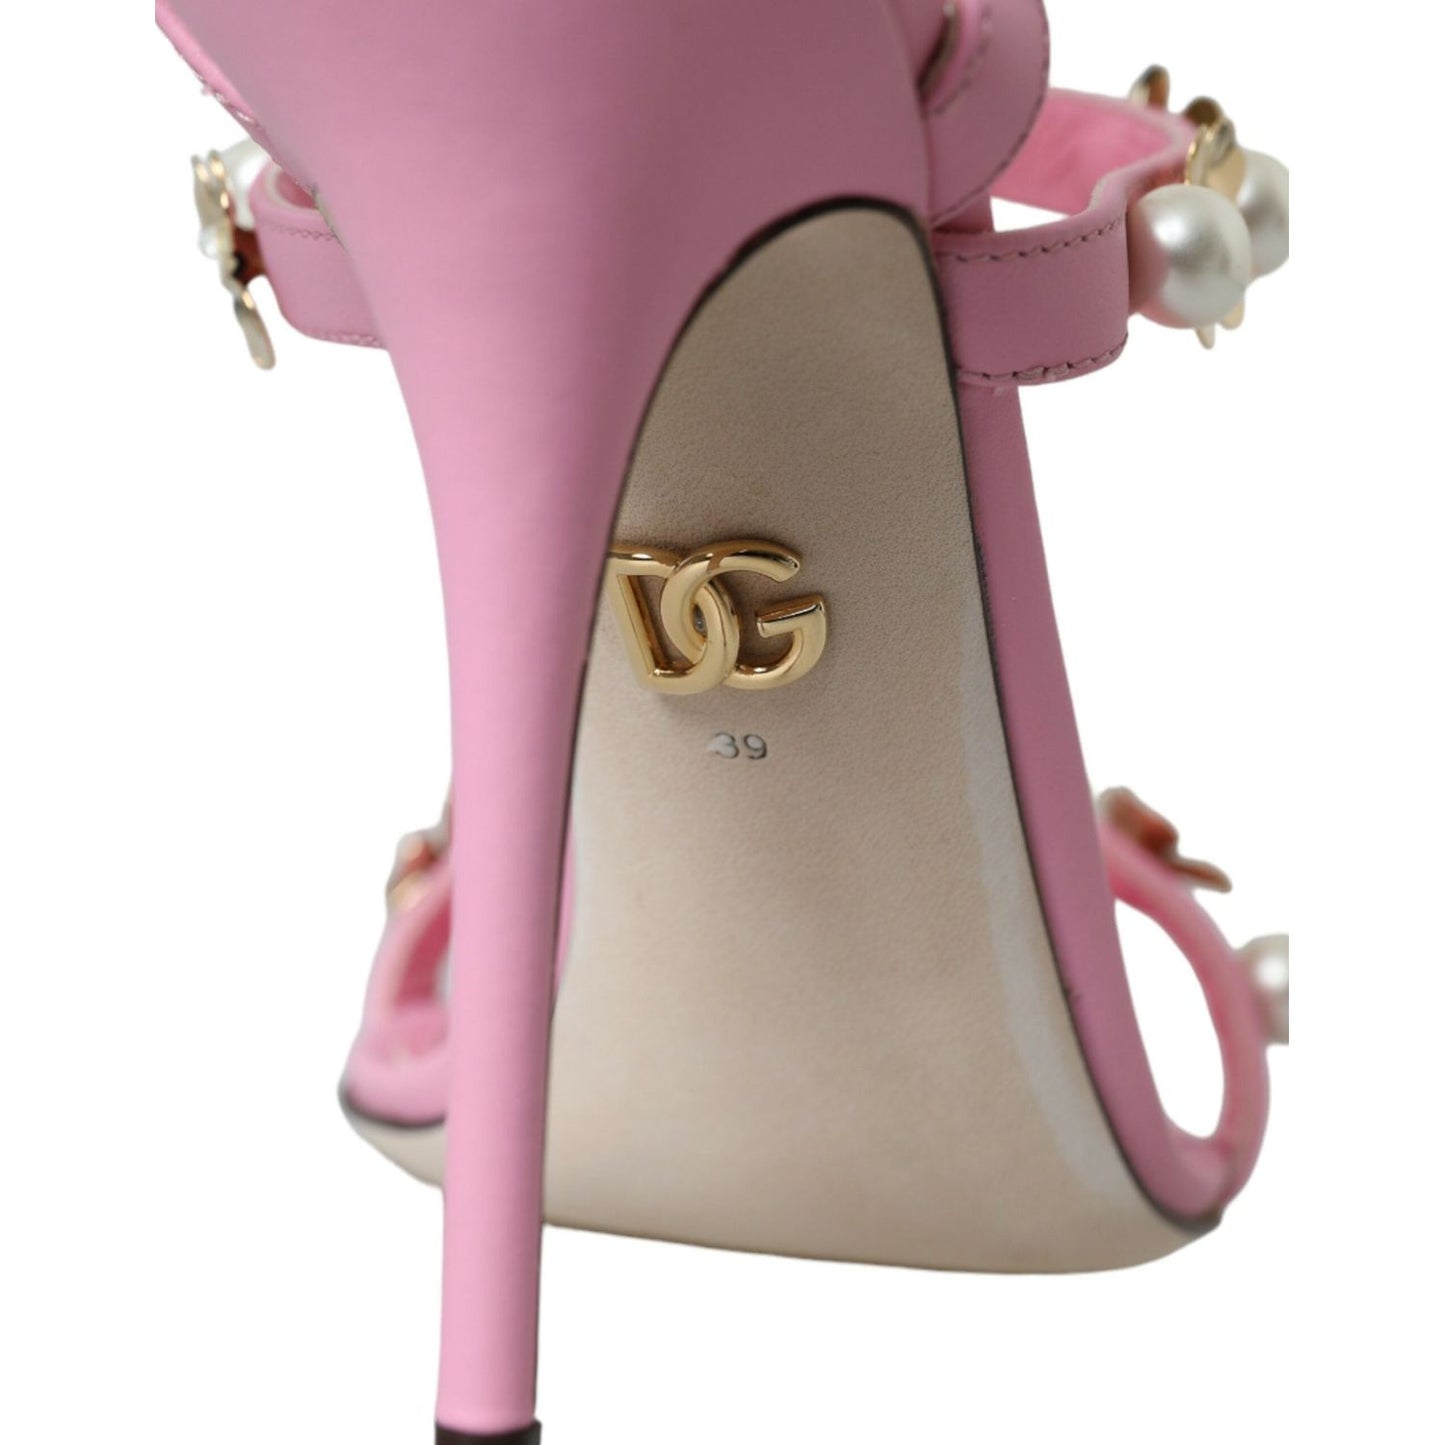 Dolce & Gabbana Pink Leather Embellished Heels Sandals Shoes pink-leather-embellished-heels-sandals-shoes-1